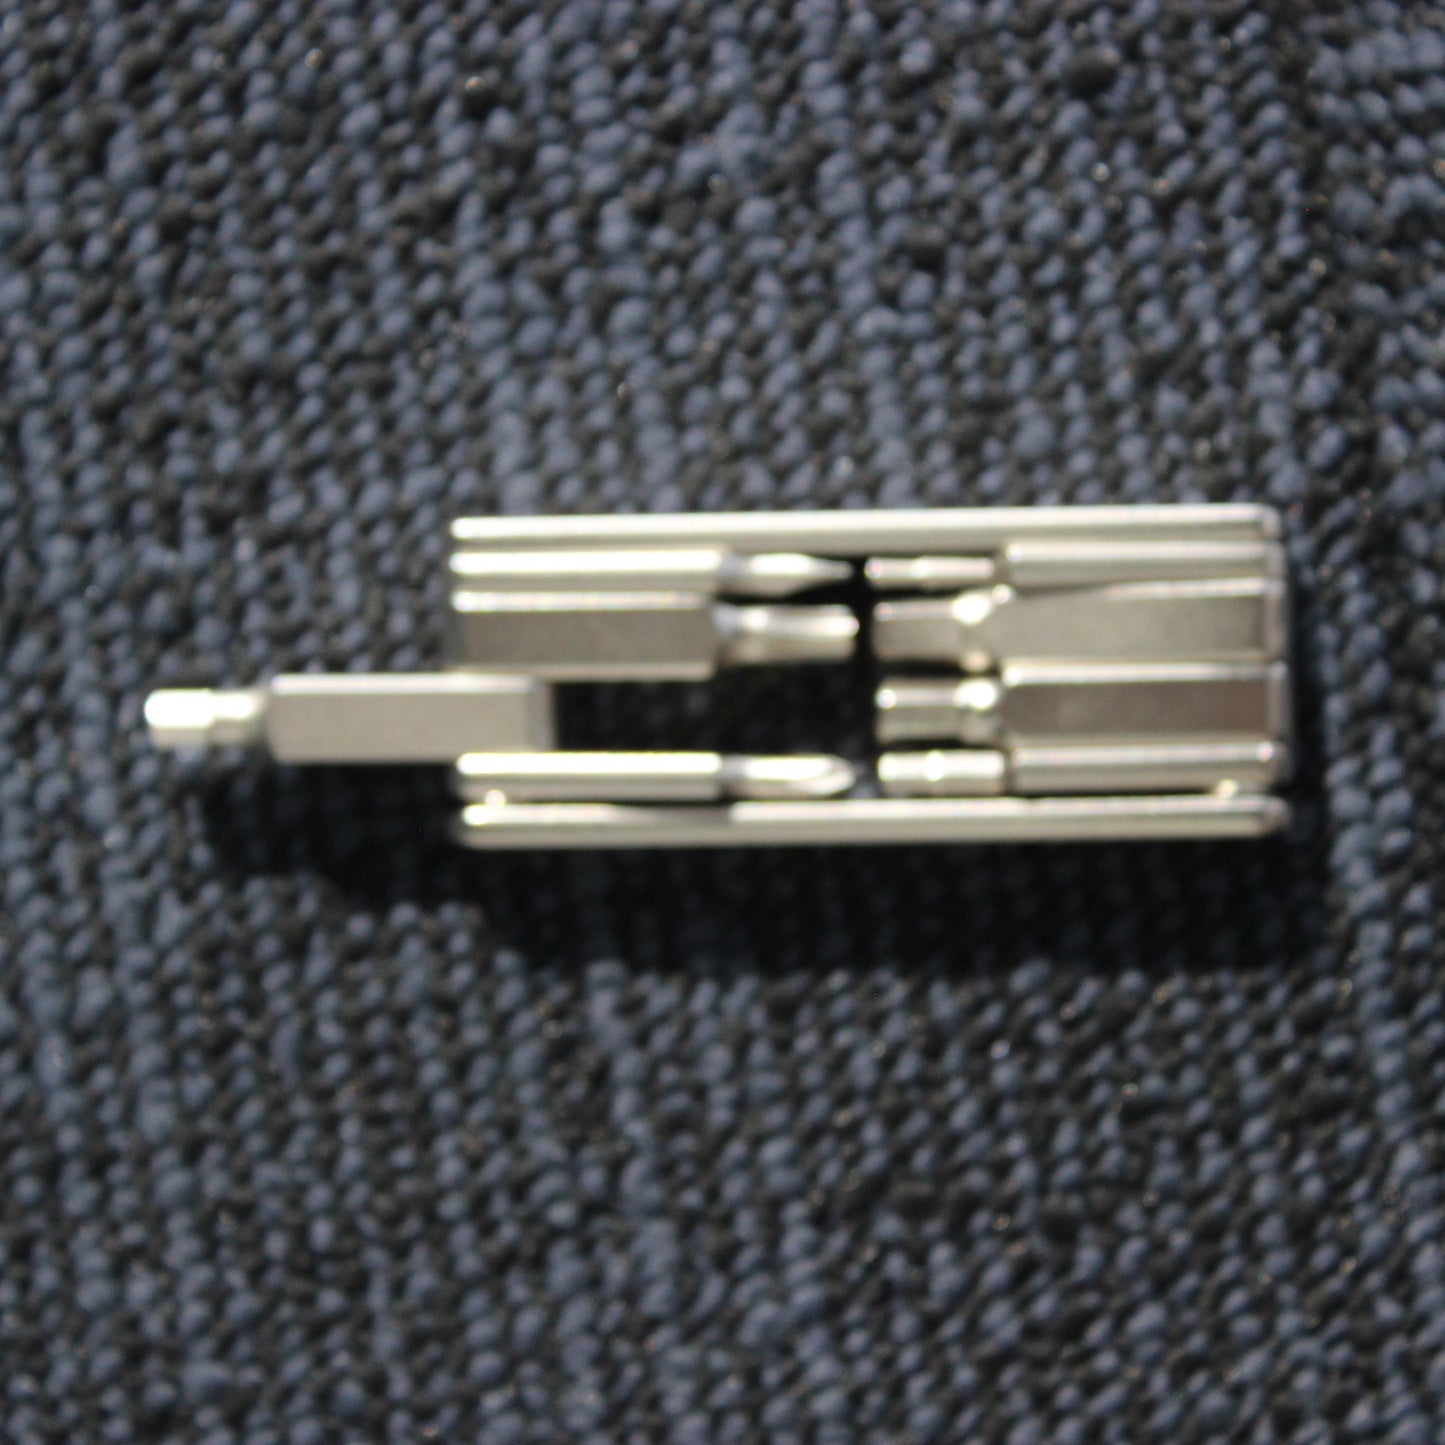 8 in 1 Multi-Function Mini Pocket Screwdriver - Portable Repair Tool Kit